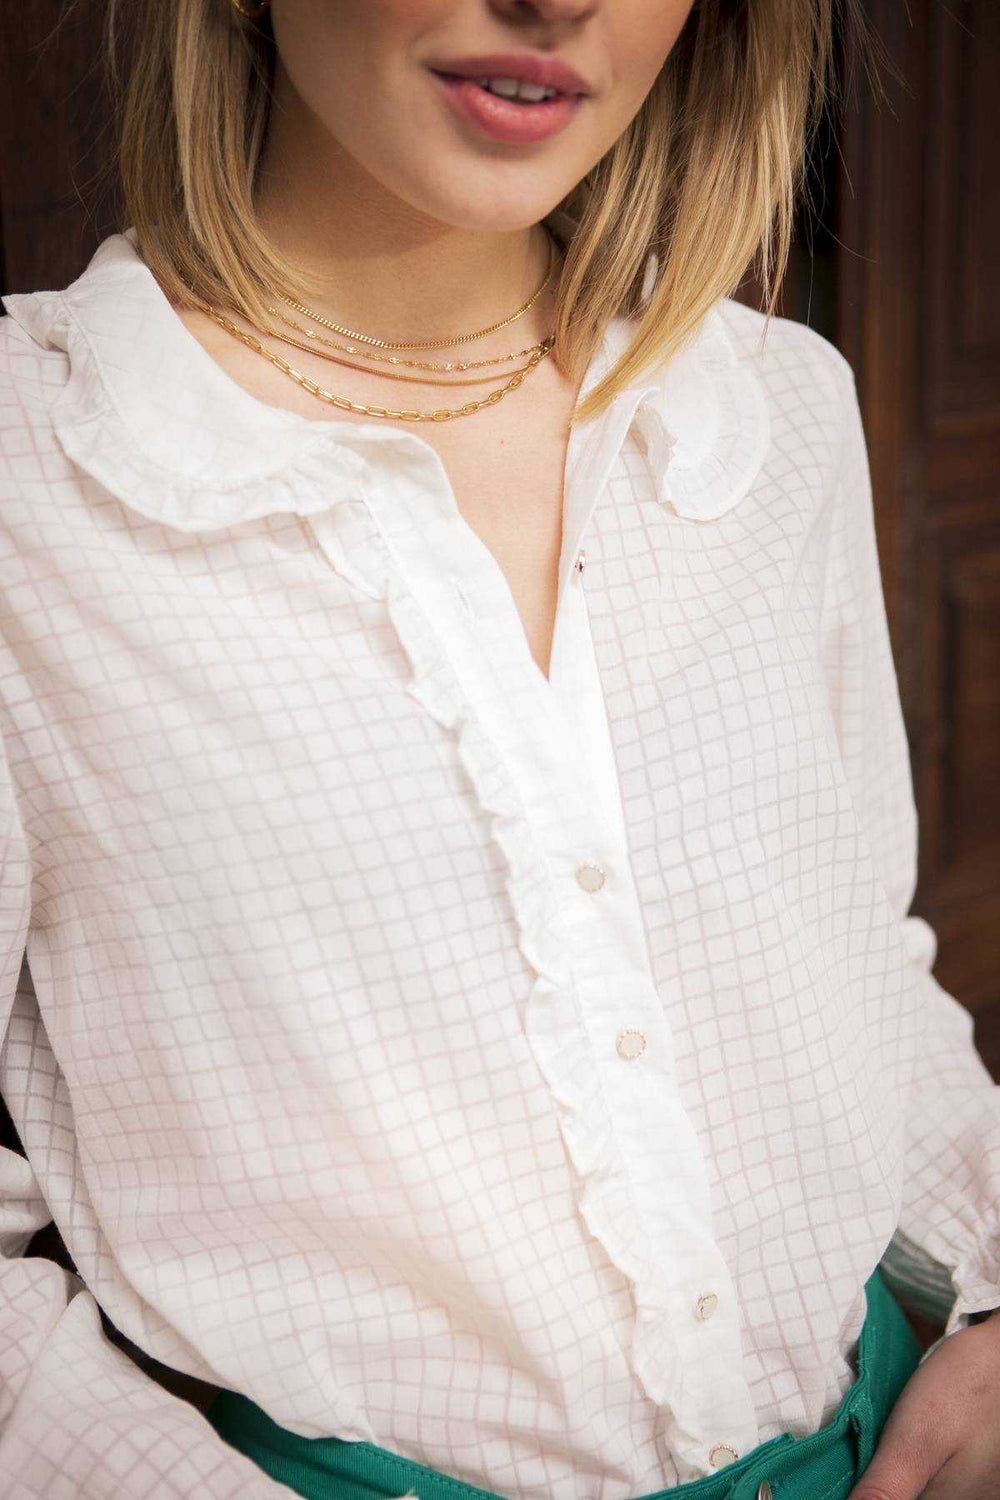 camicetta misto cotone con bottoncini gioiello, colletto e rouches